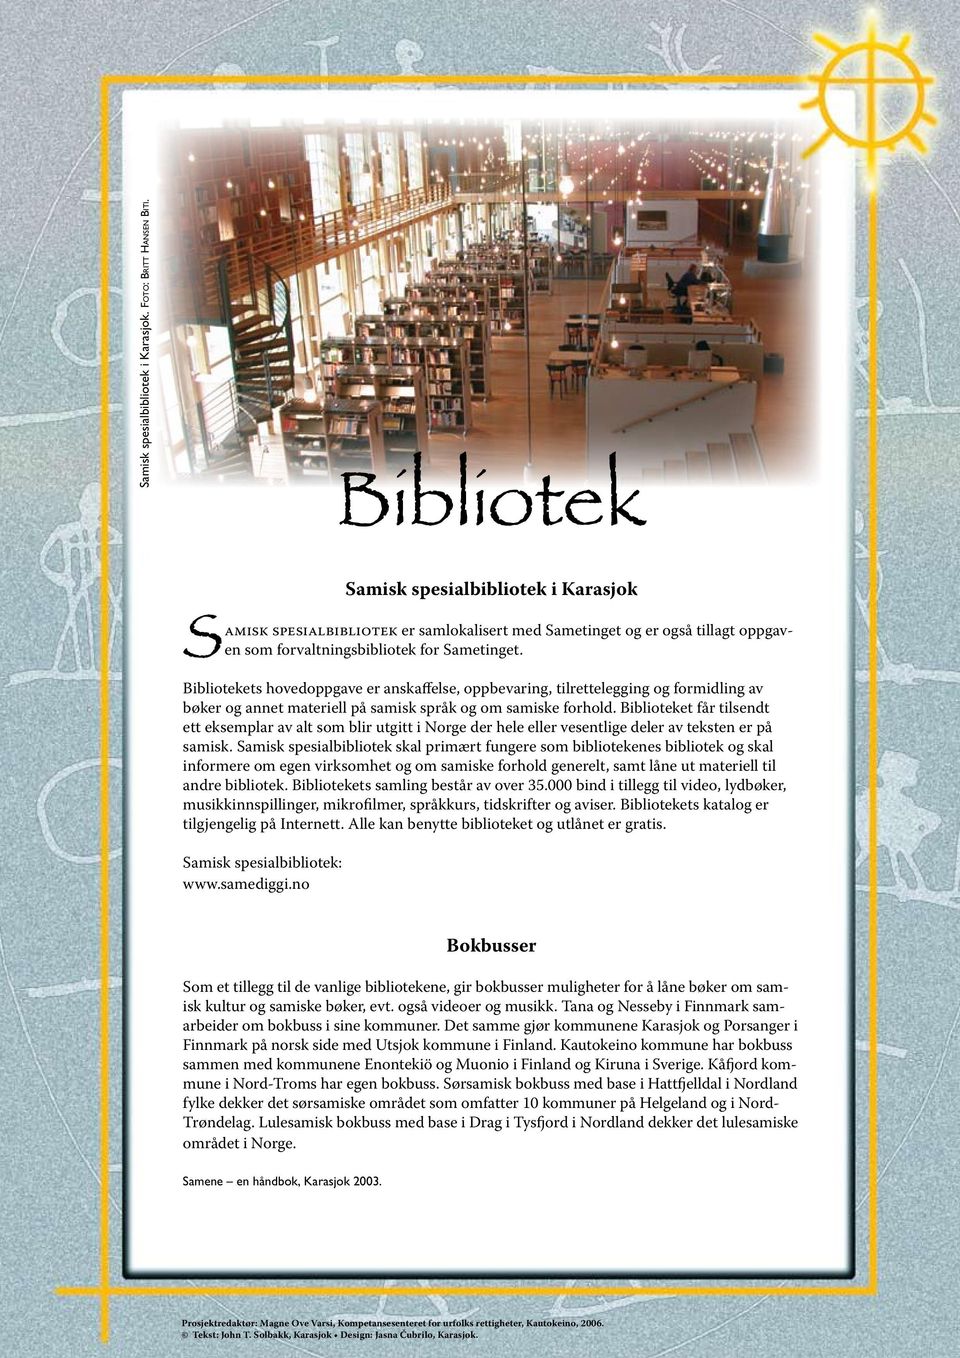 Bibliotekets hovedoppgave er anskaffelse, oppbevaring, tilrettelegging og formidling av bøker og annet materiell på samisk språk og om samiske forhold.